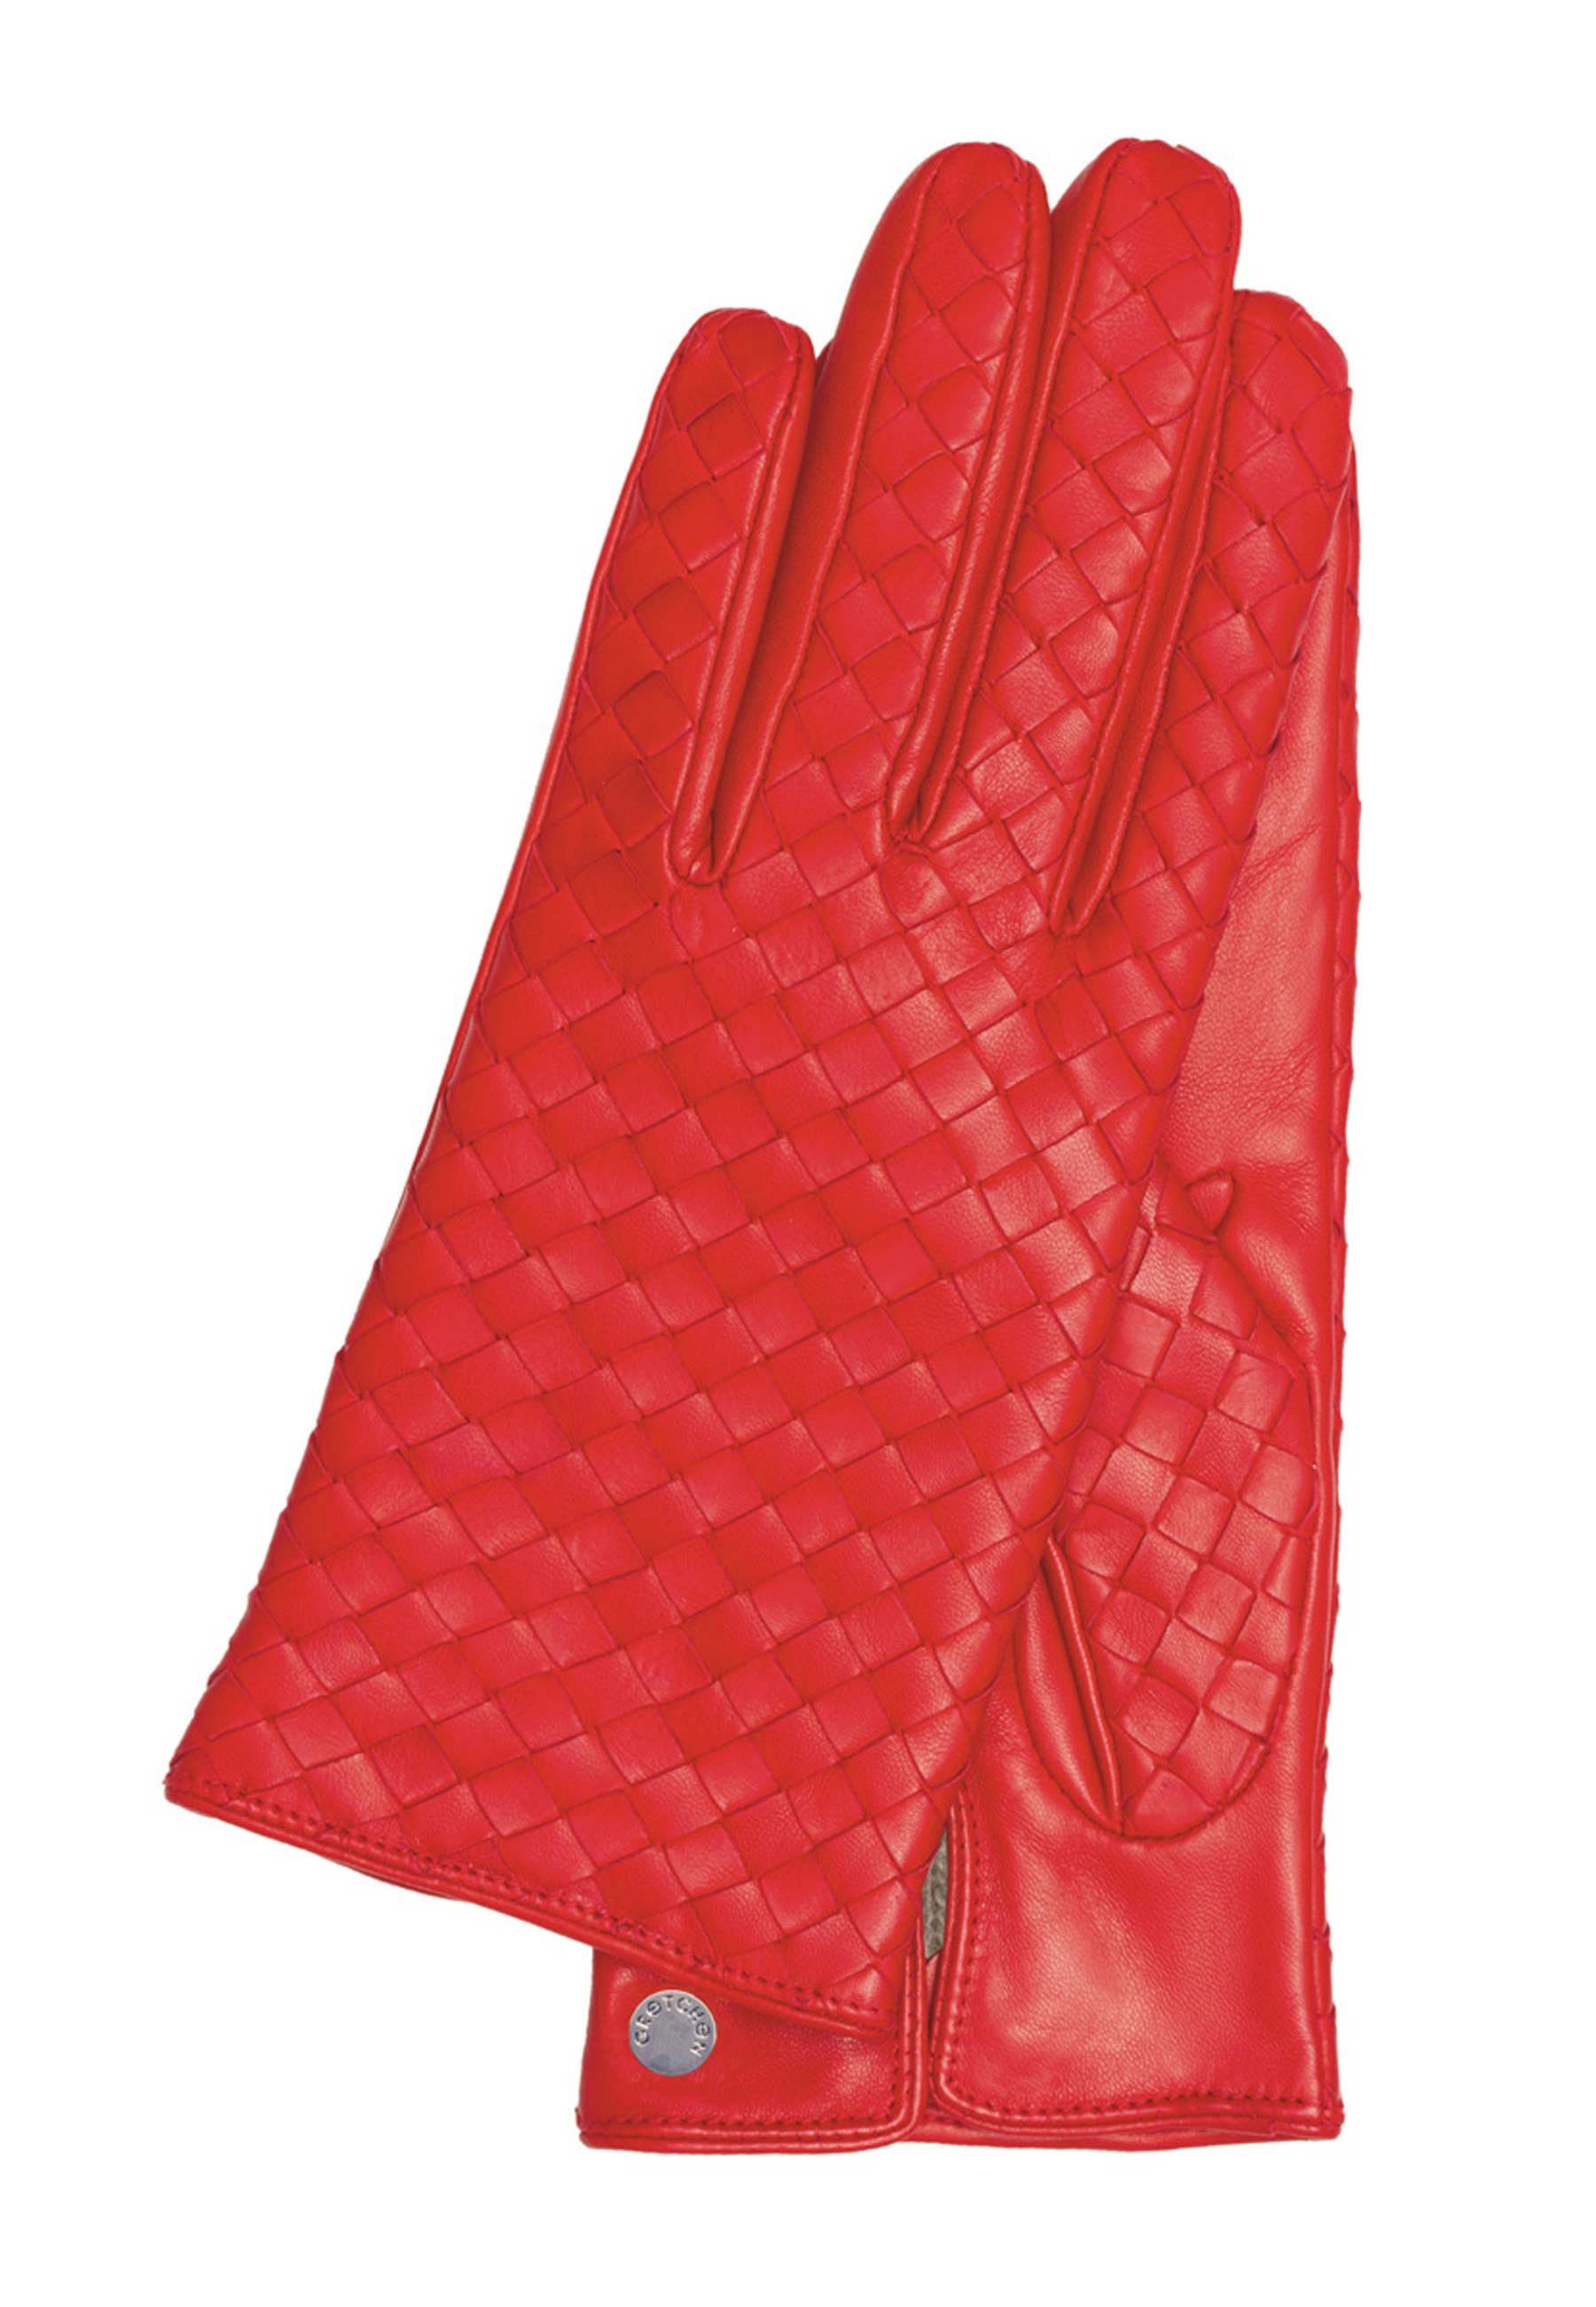 trendiger GRETCHEN Flechtung rot Lederhandschuhe Woven Gloves mit